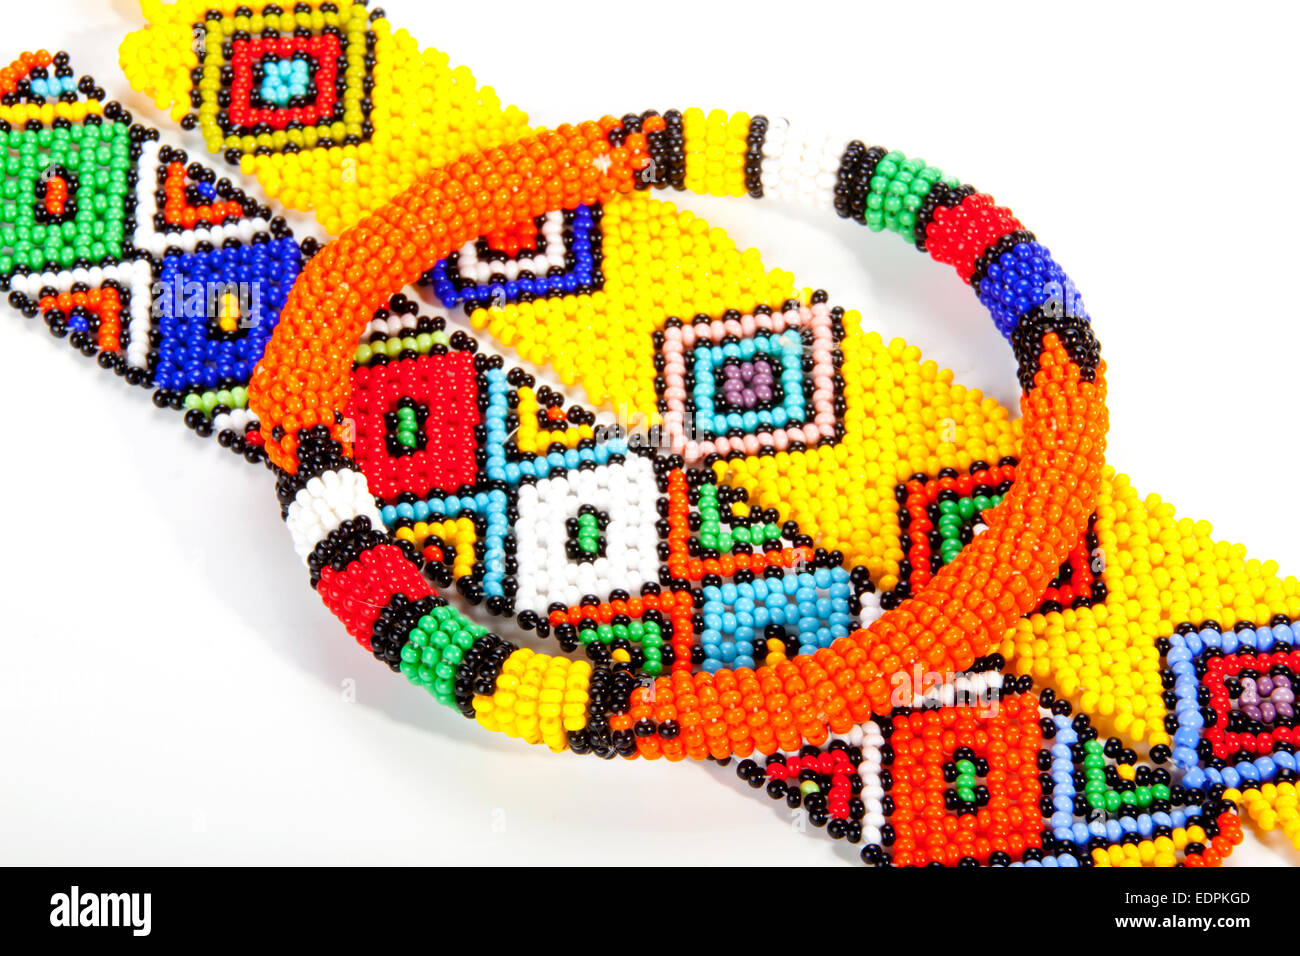 circular beaded Zulu armband atop two wristbands Stock Photo